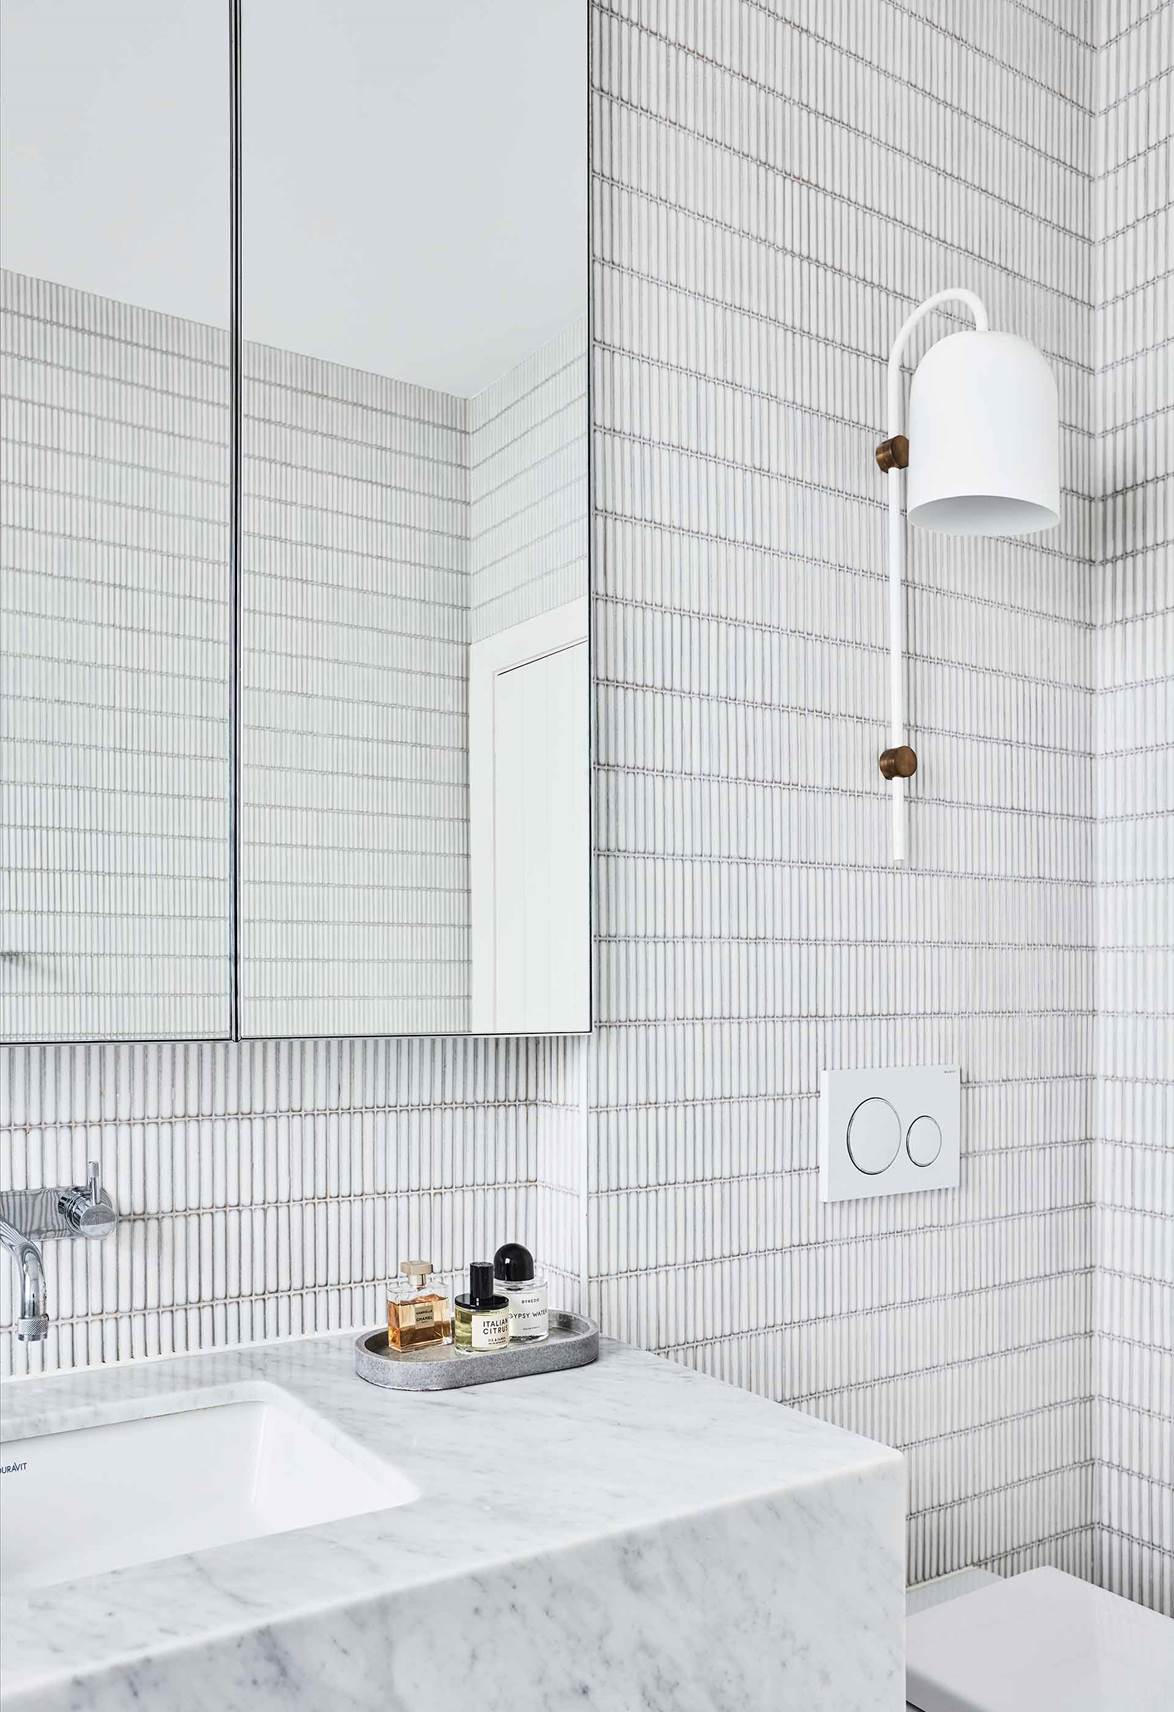 Phòng tắm gia đình thư thái như tại spa nhờ thiết kế sắc trắng chủ đạo-6